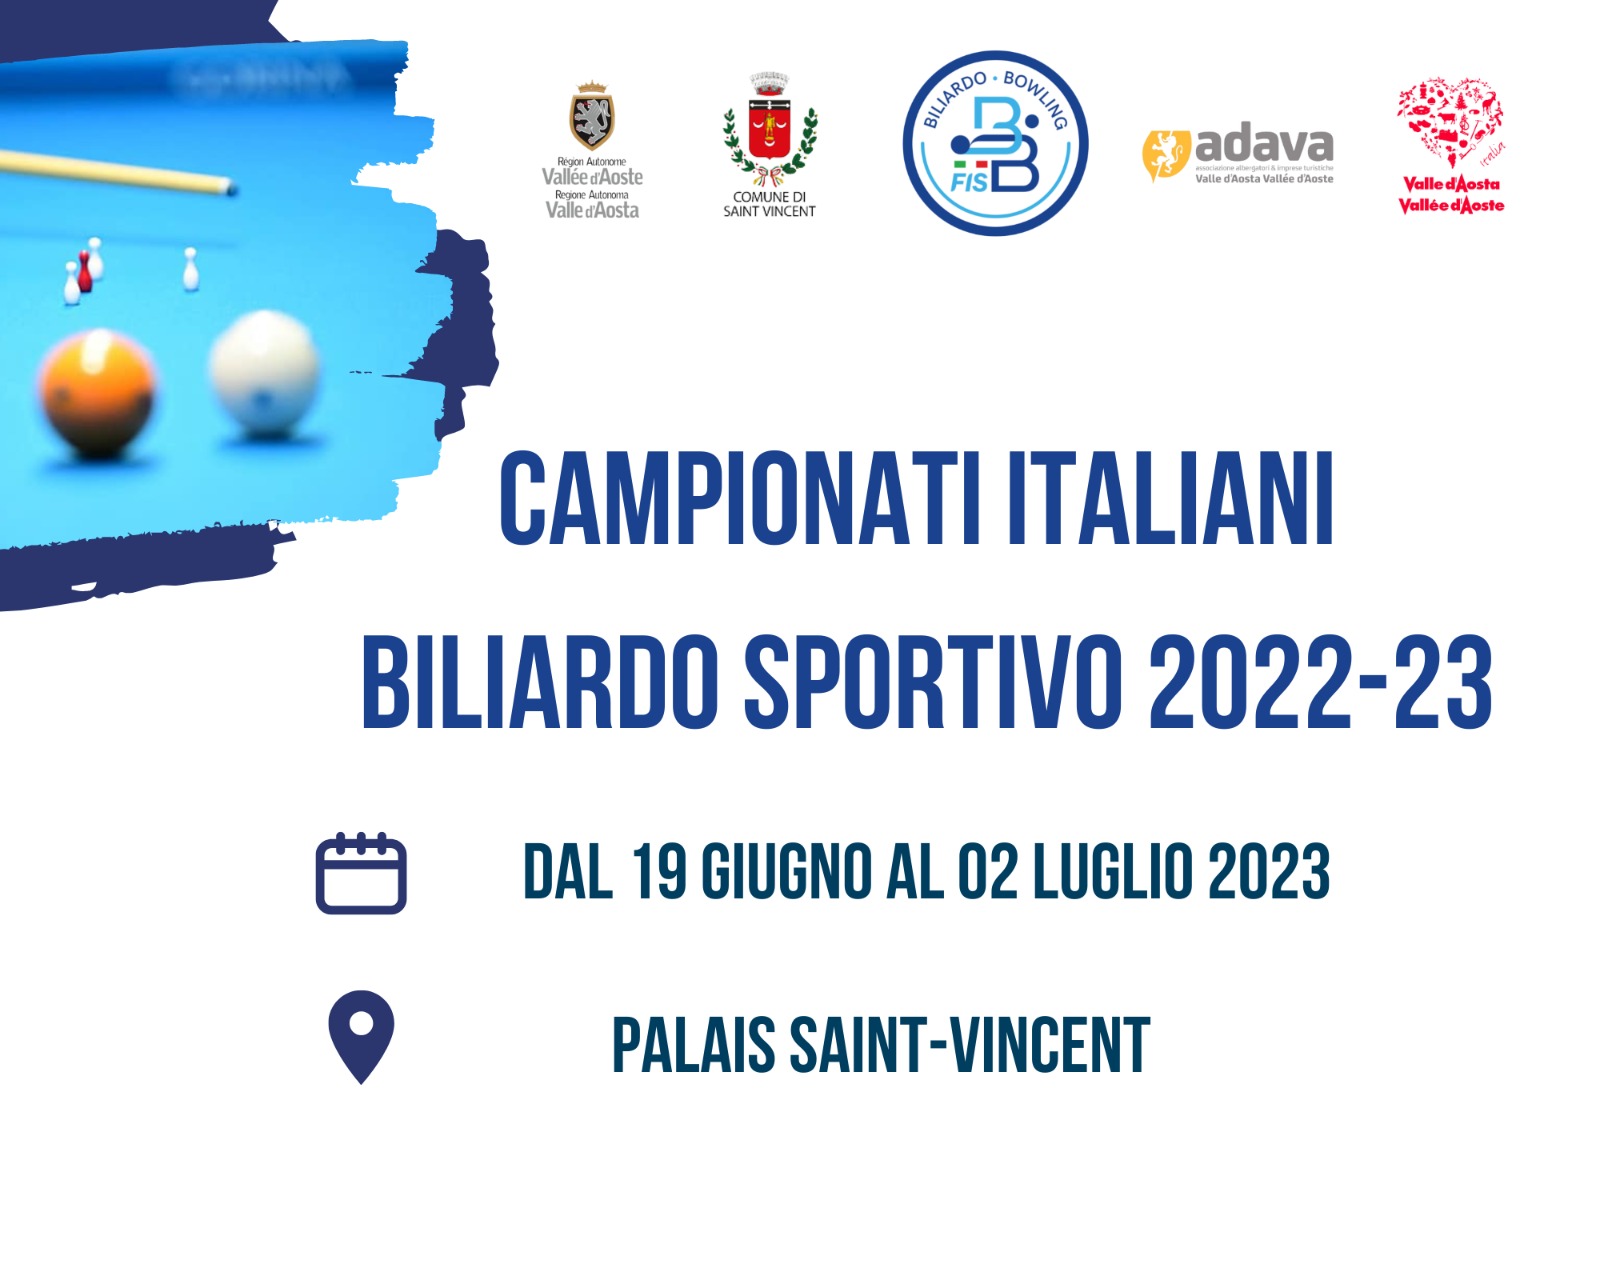 CAMPIONATI ITALIANI - FINALI SAINT-VINCENT: PROGRAMMA GARE 